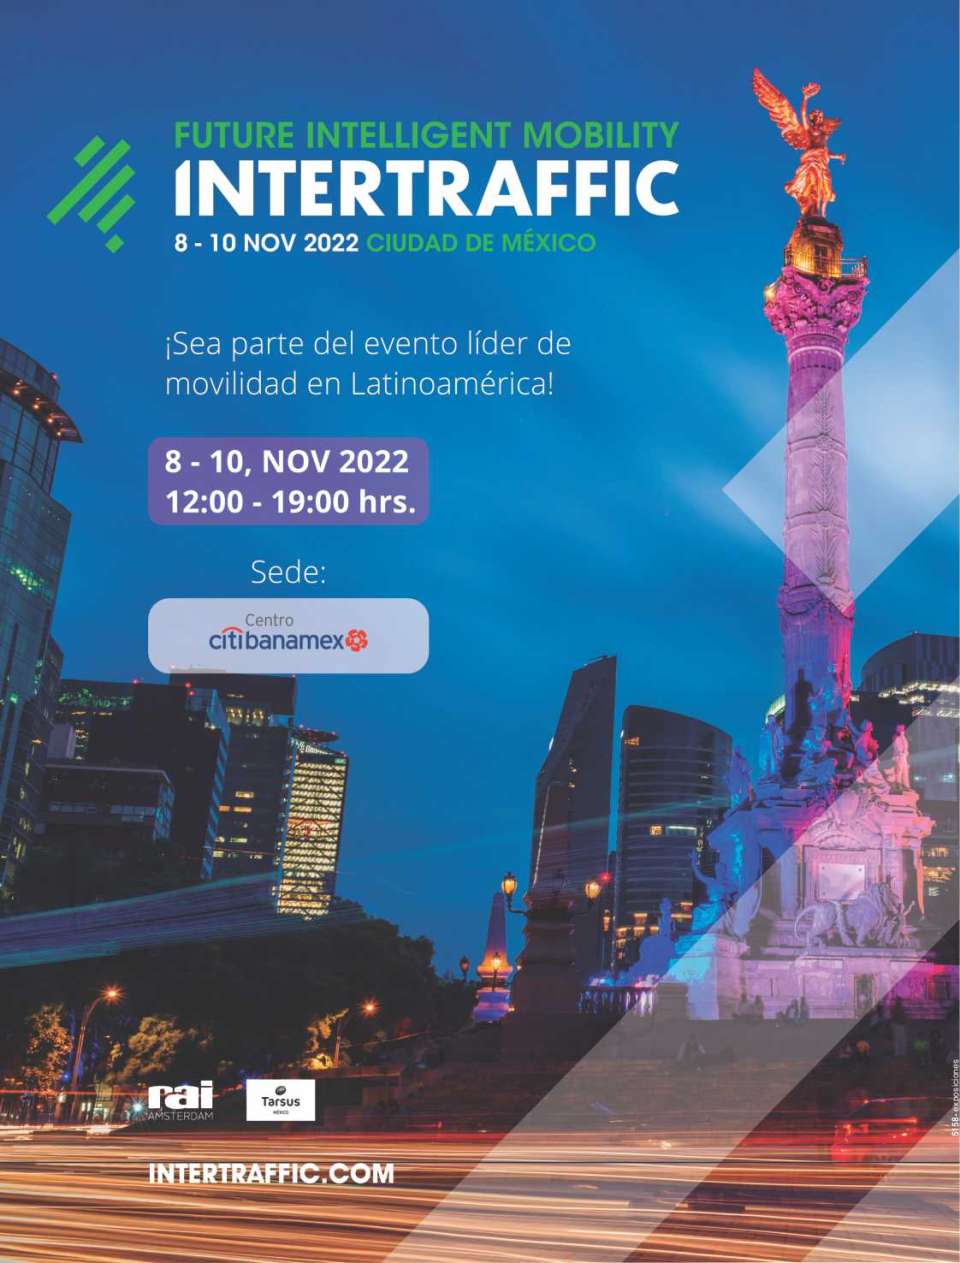 November 8 to 10, 2022 INTERTRAFFIC MEXICO in Centro CitiBanamex Mexico City. Future Intelligent Mobility.